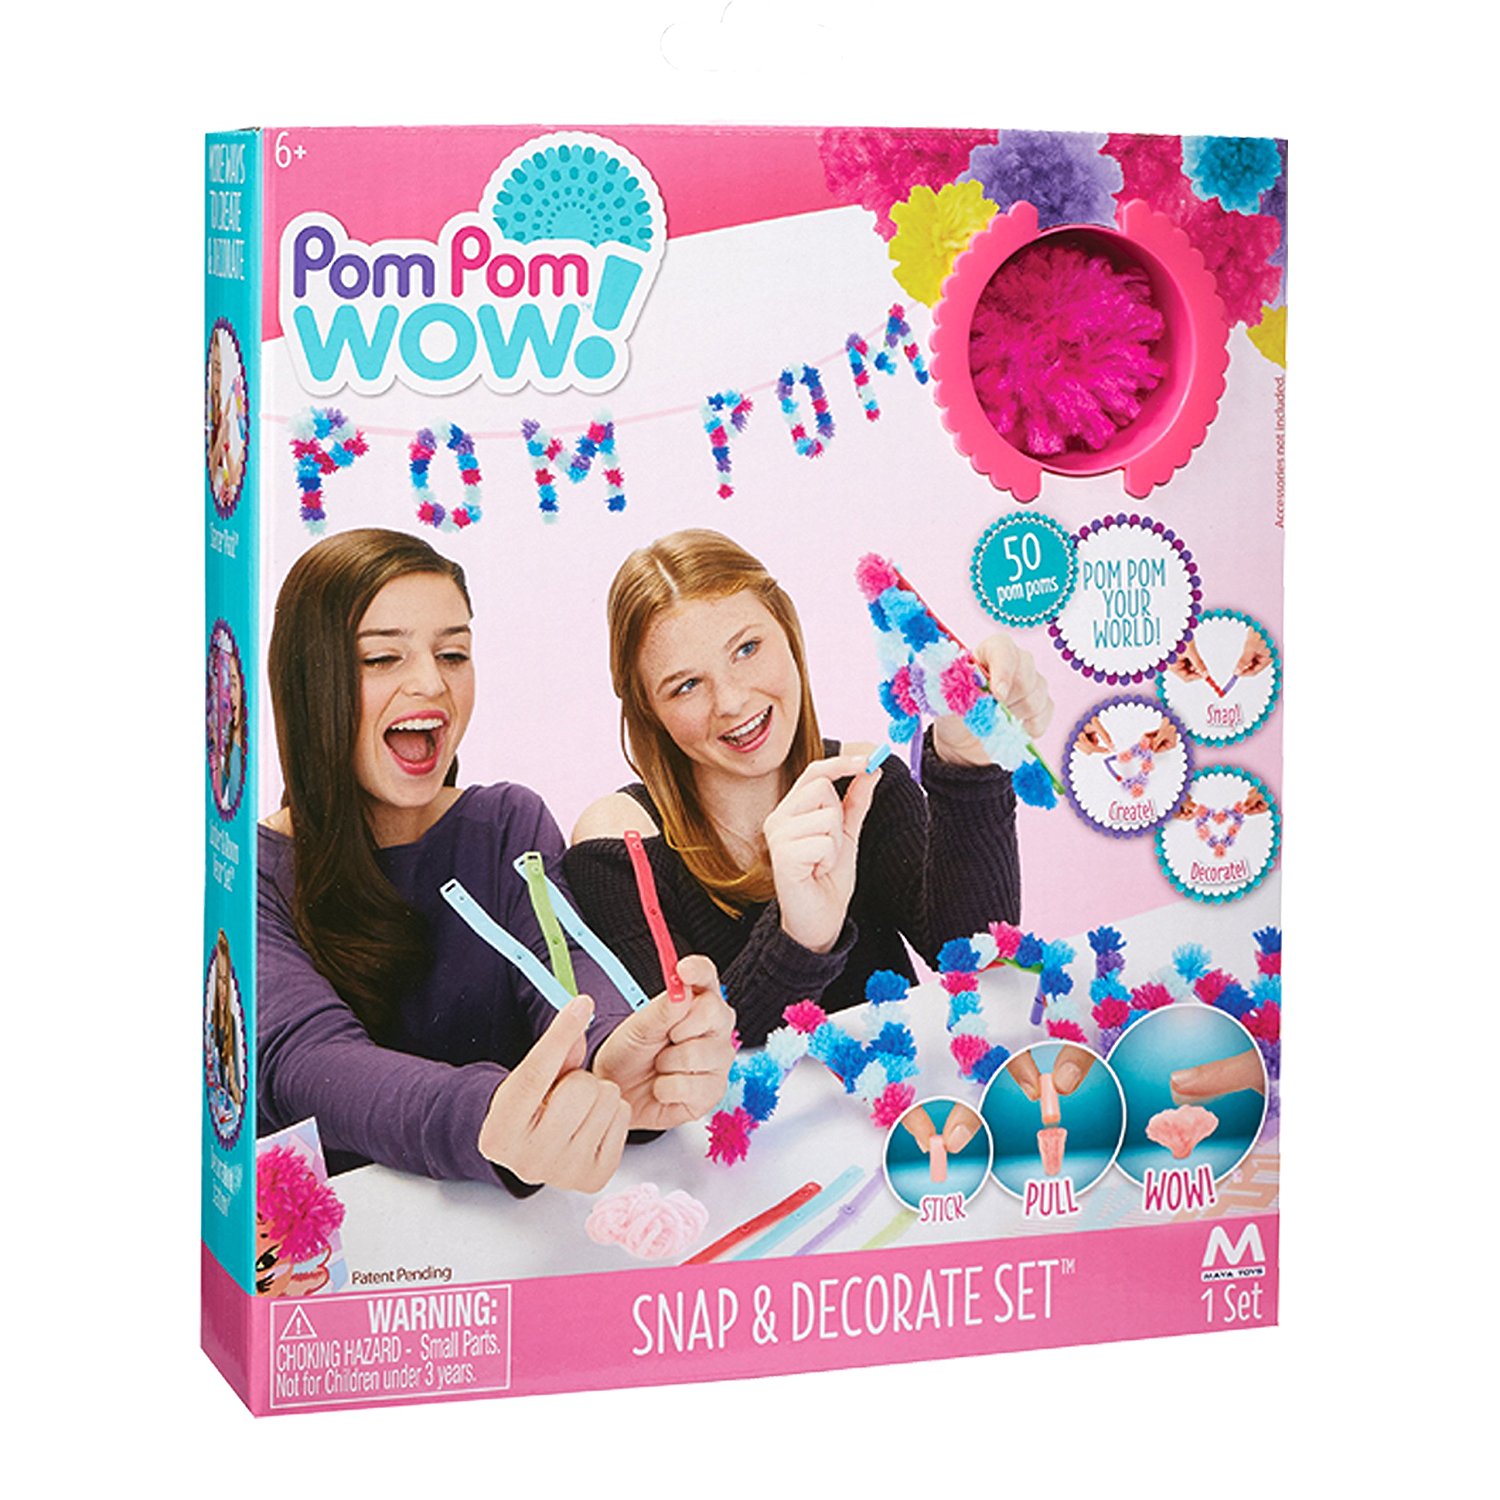 pom-pom-wow-snap-decorate-set